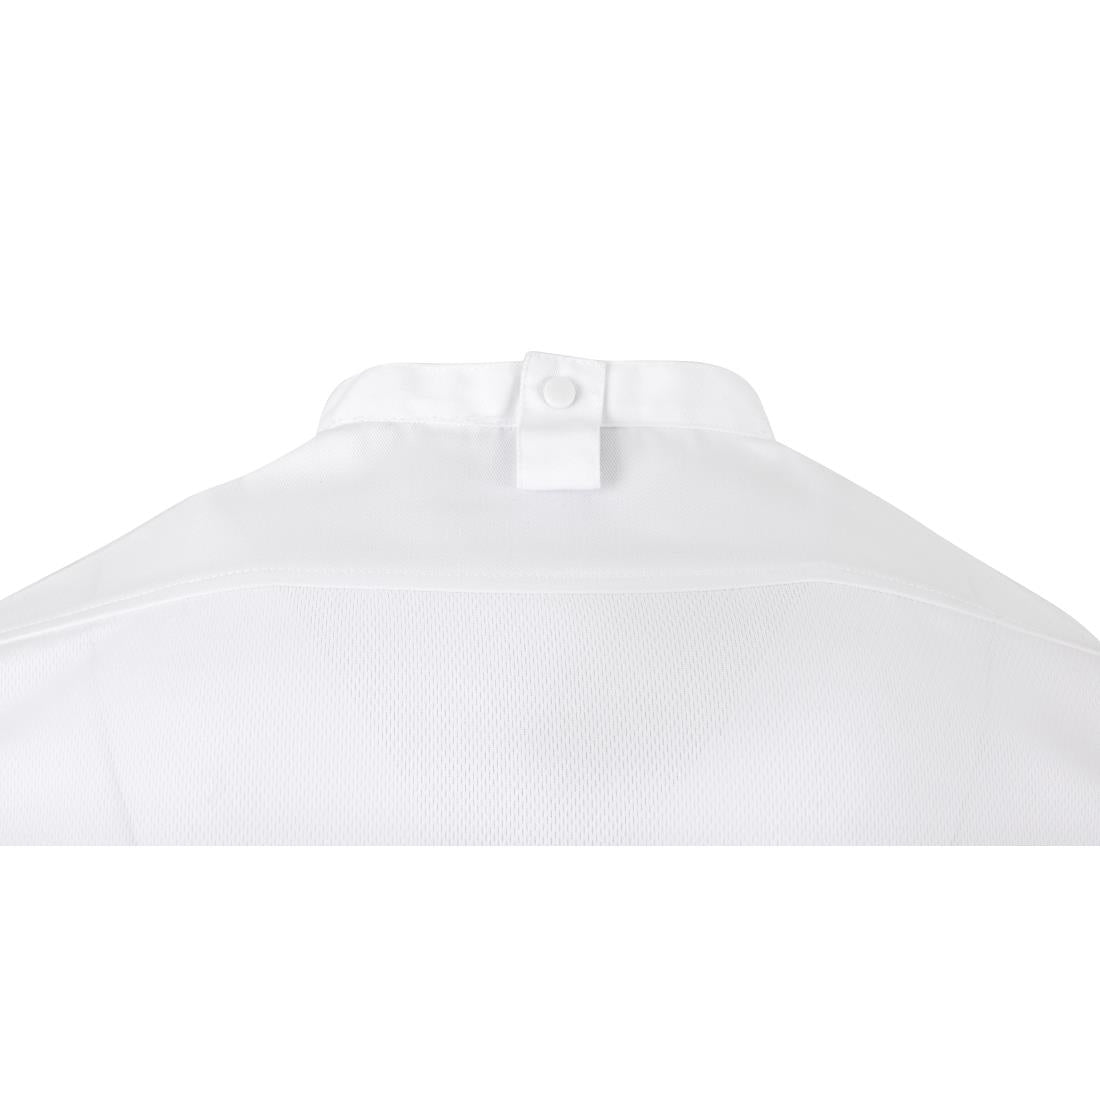 BA116-L Southside Harlem Chefs Jacket White Short Sleeve Mesh Size L